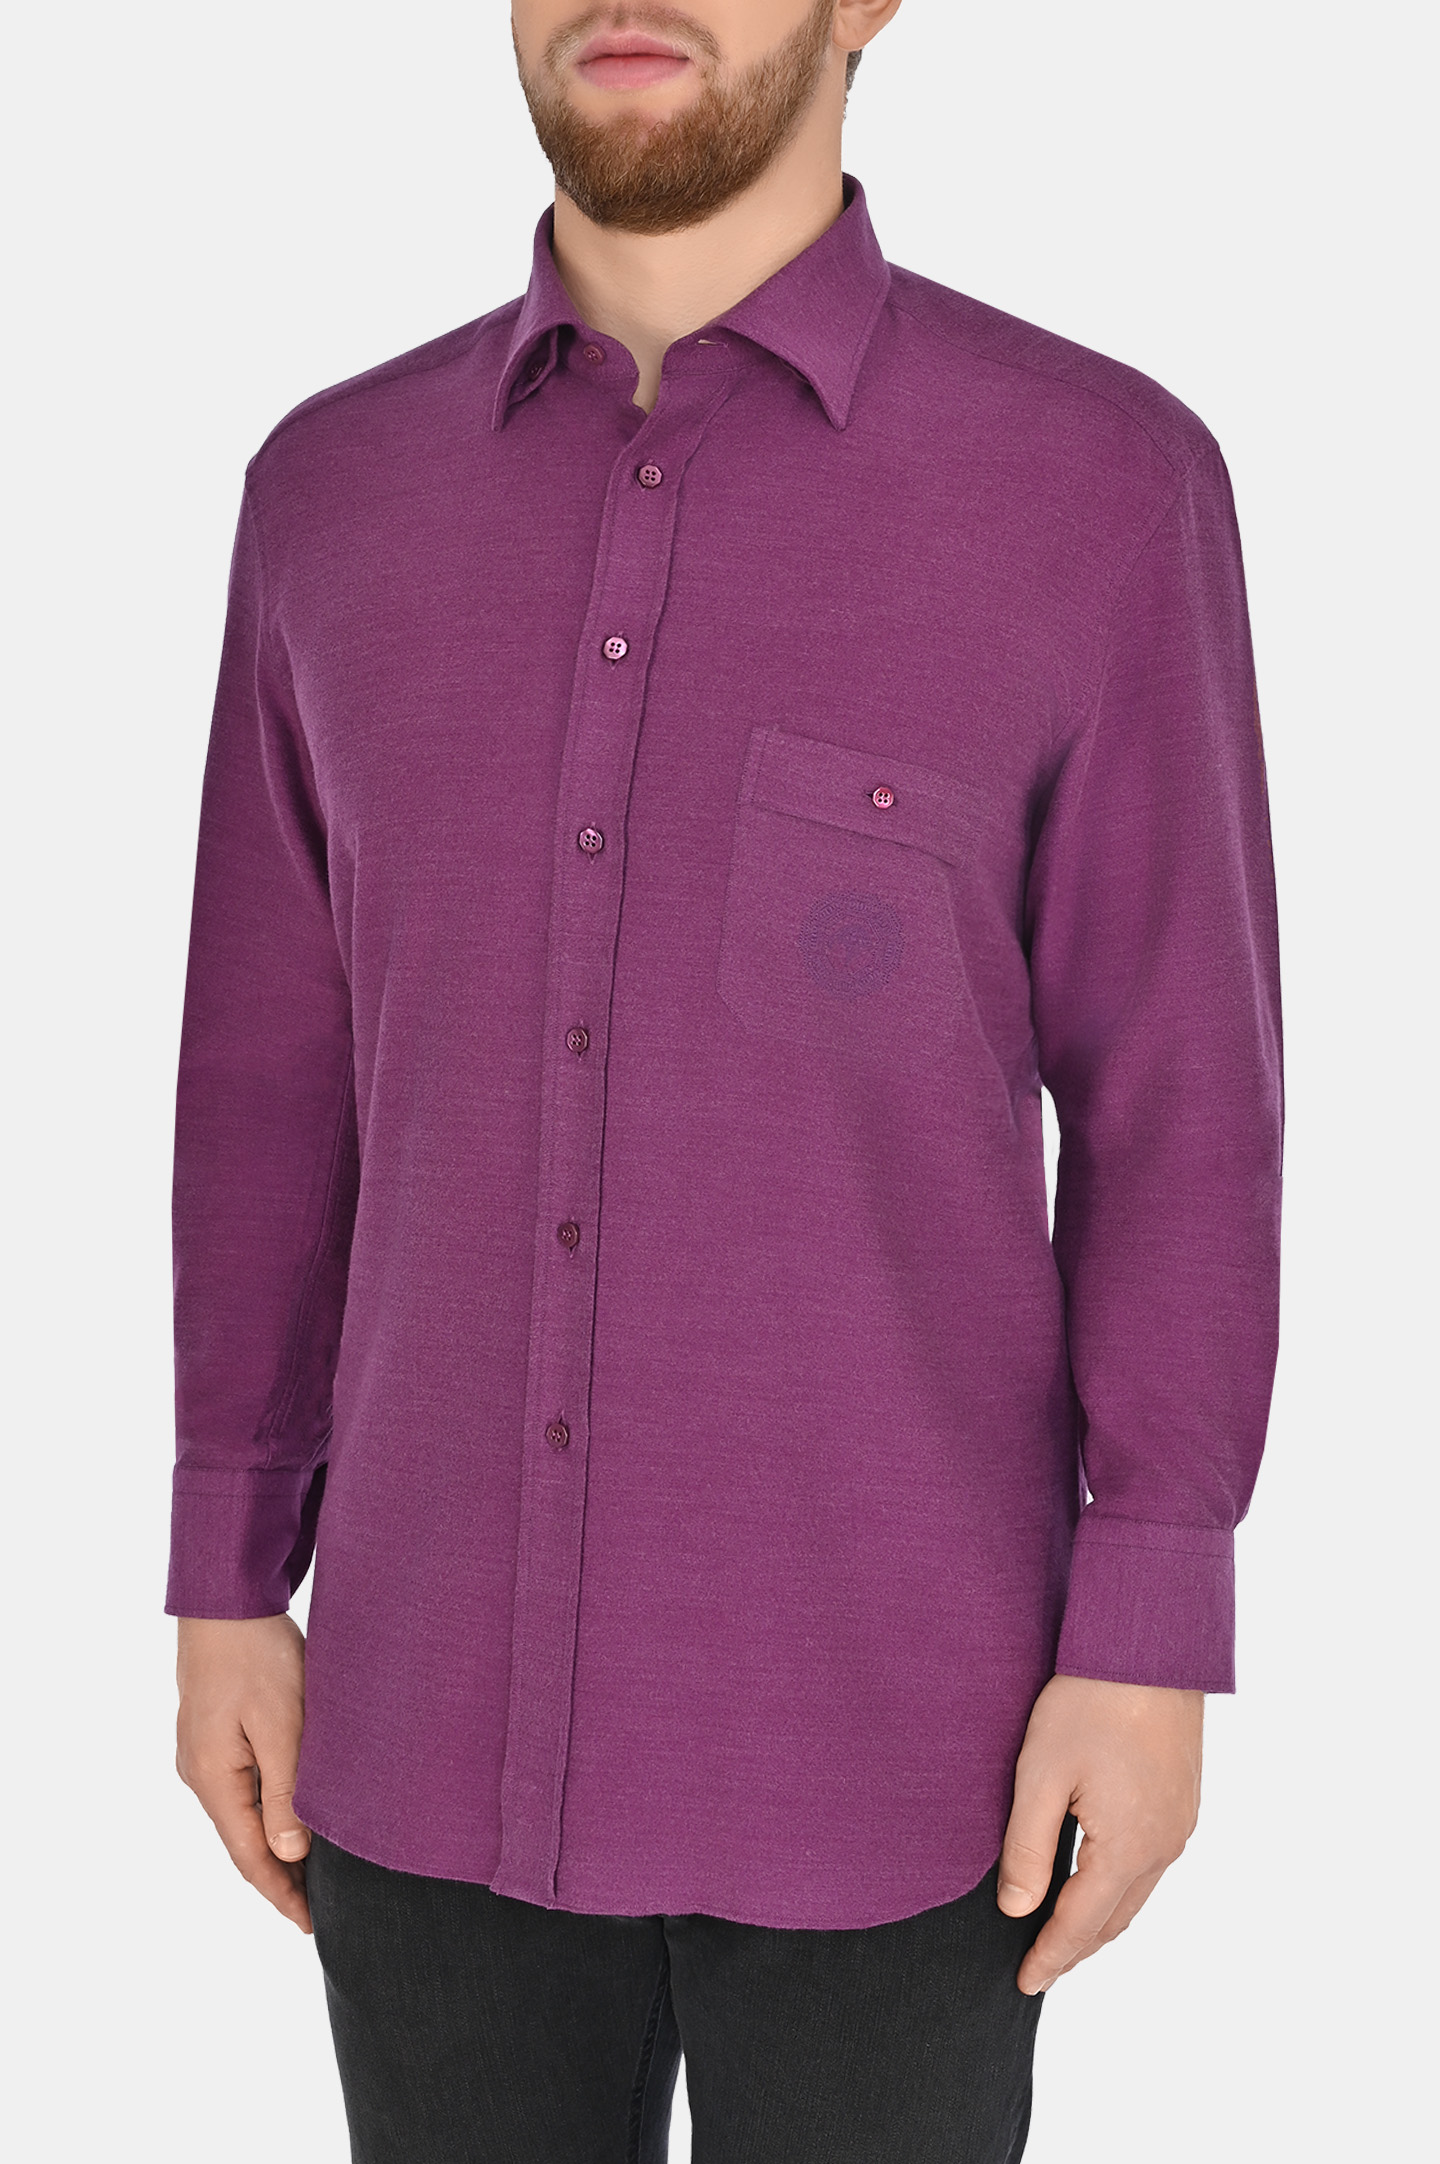 Рубашка STEFANO RICCI MC007041 R2654, цвет: Фиолетовый, Мужской